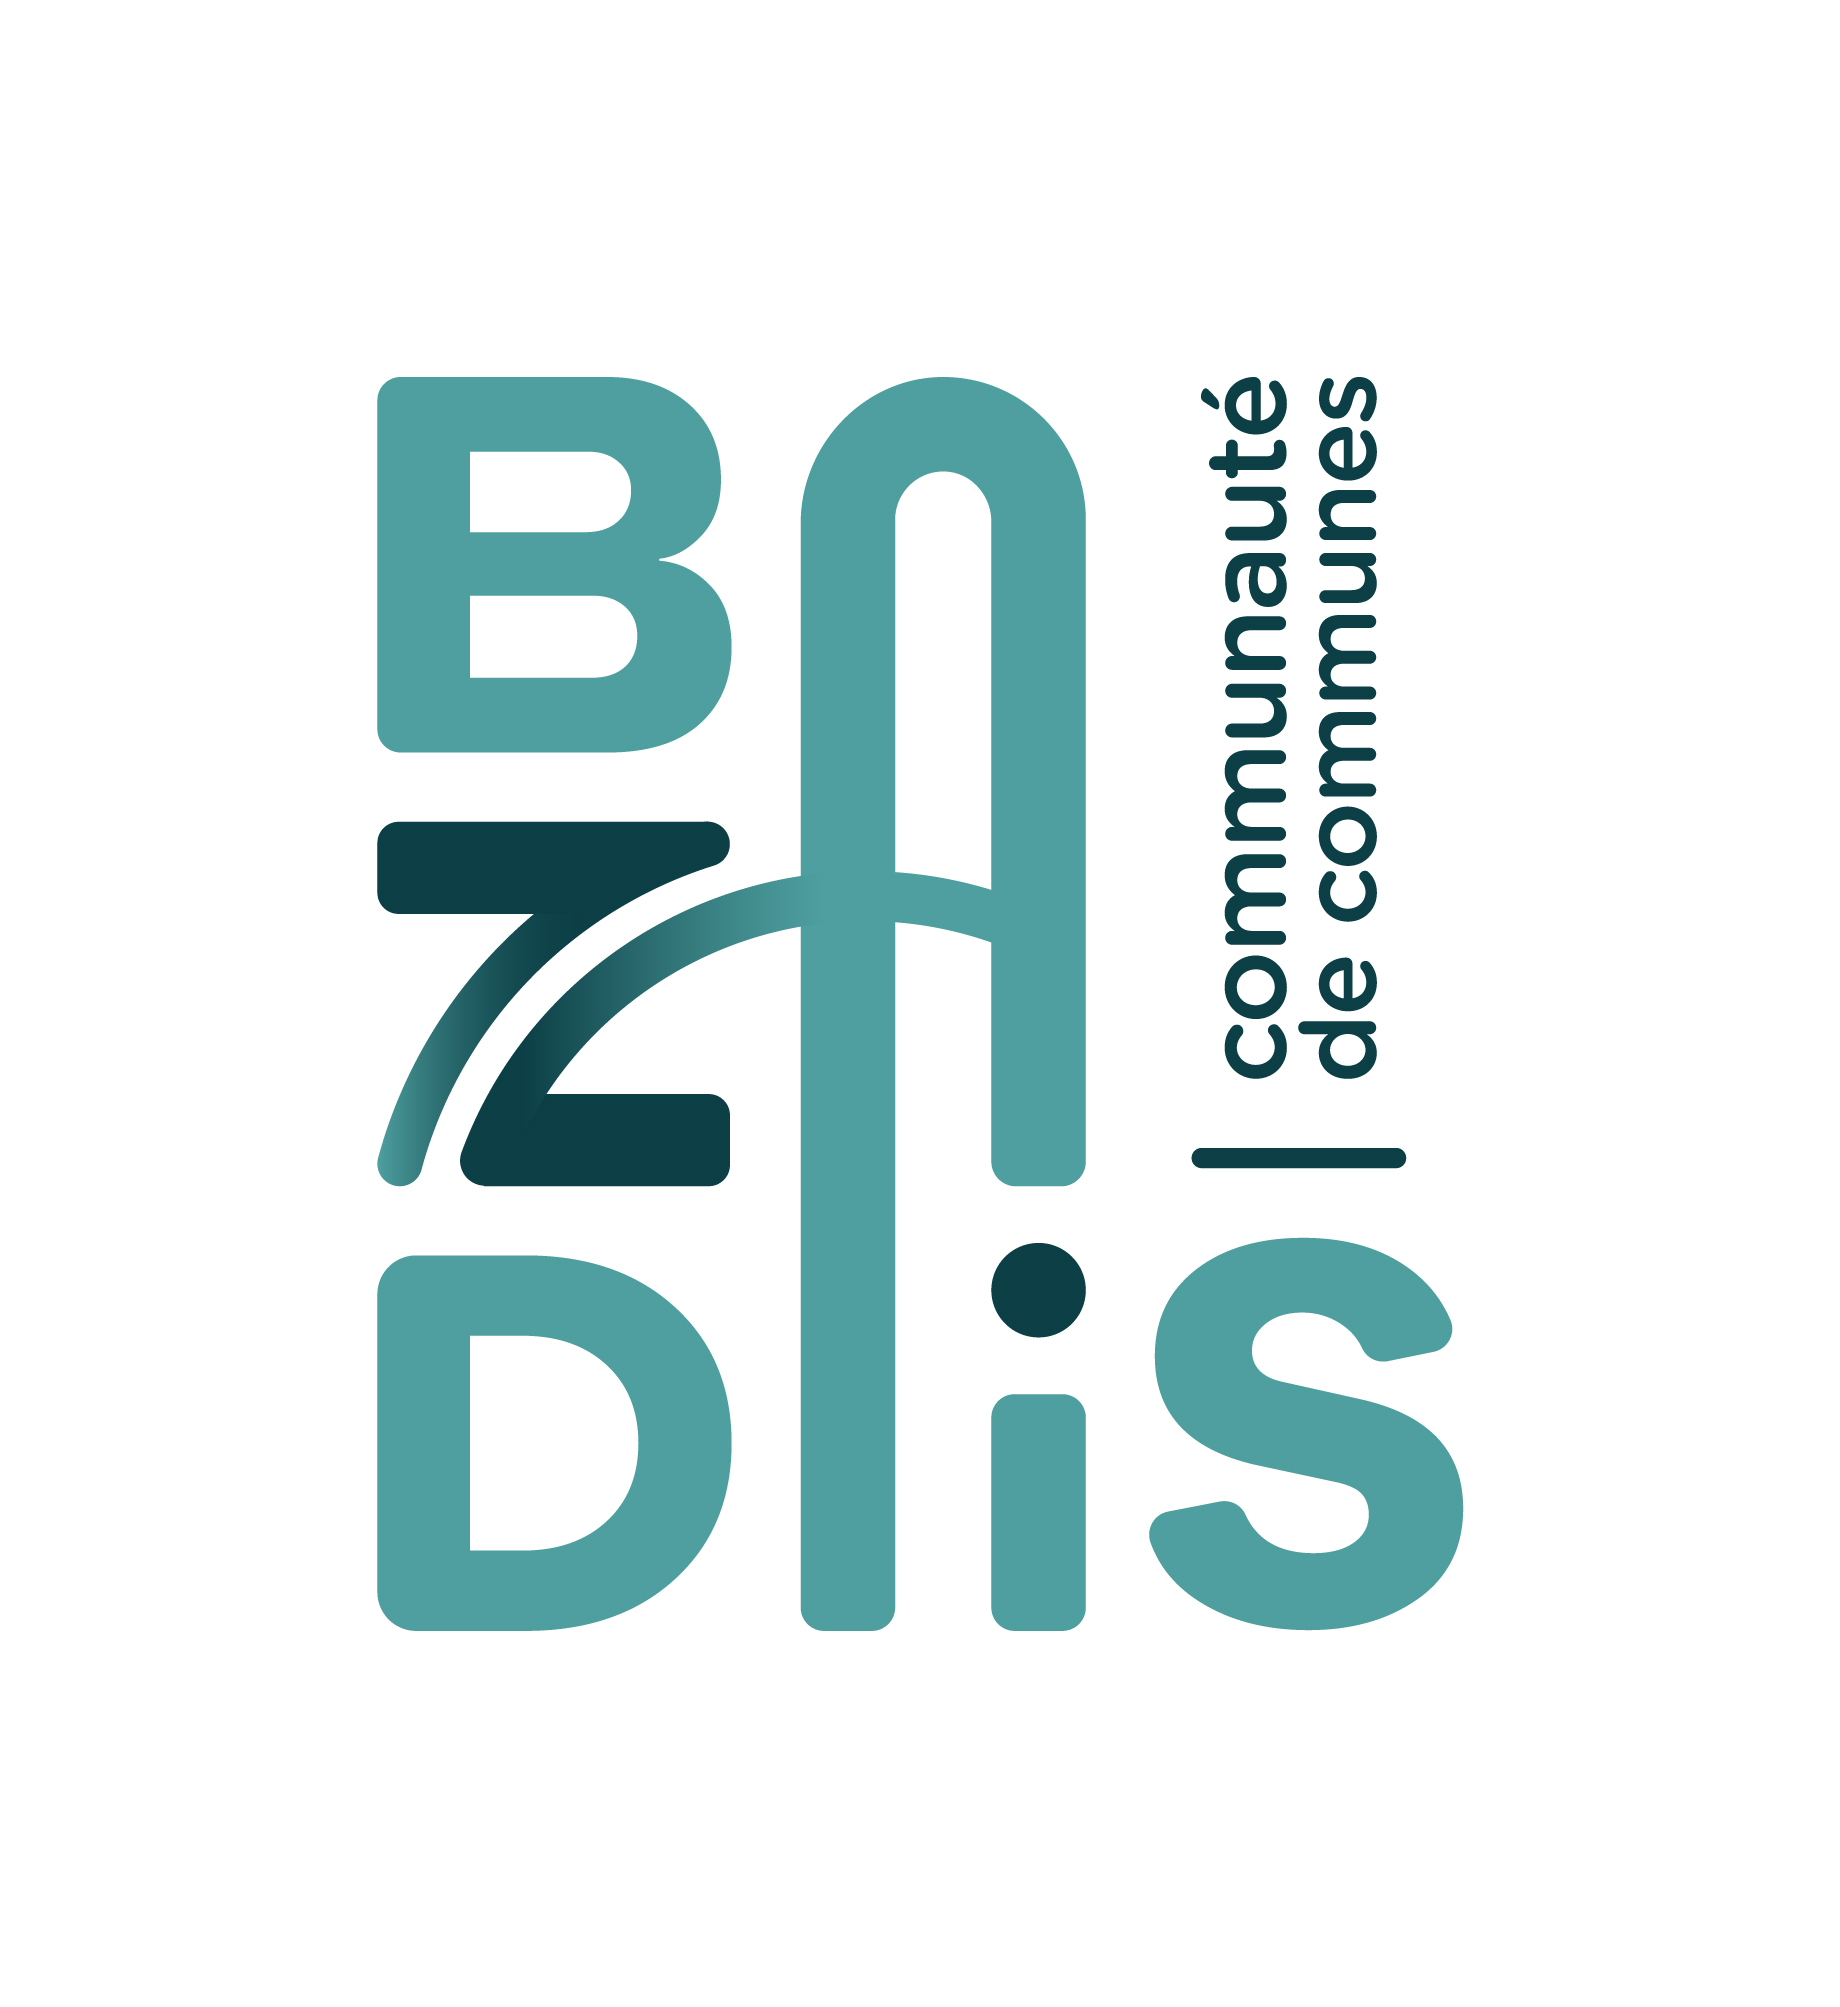 Logo de la communauté de communes du Bazadais